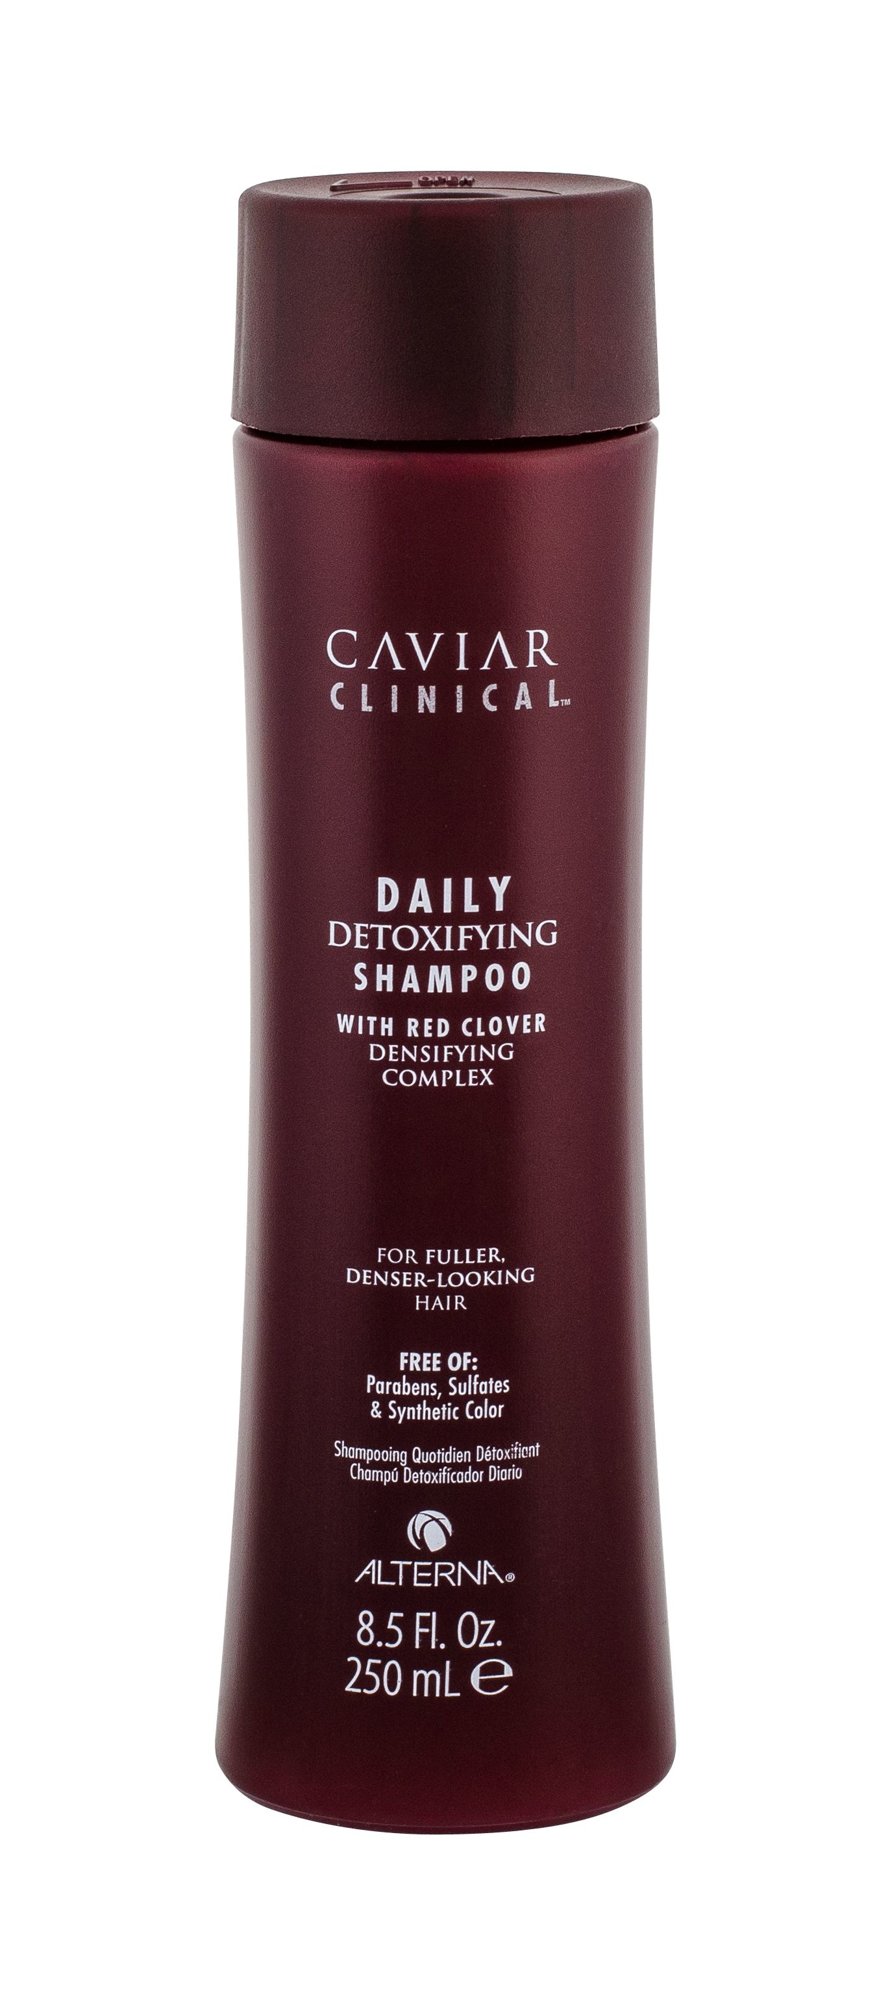 Alterna Caviar Clinical Daily Detoxifying Shampoo